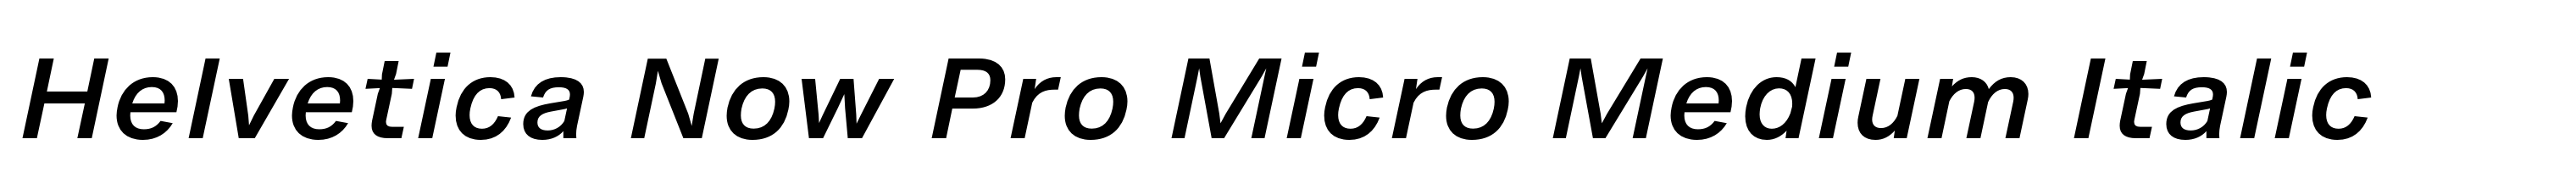 Helvetica Now Pro Micro Medium Italic